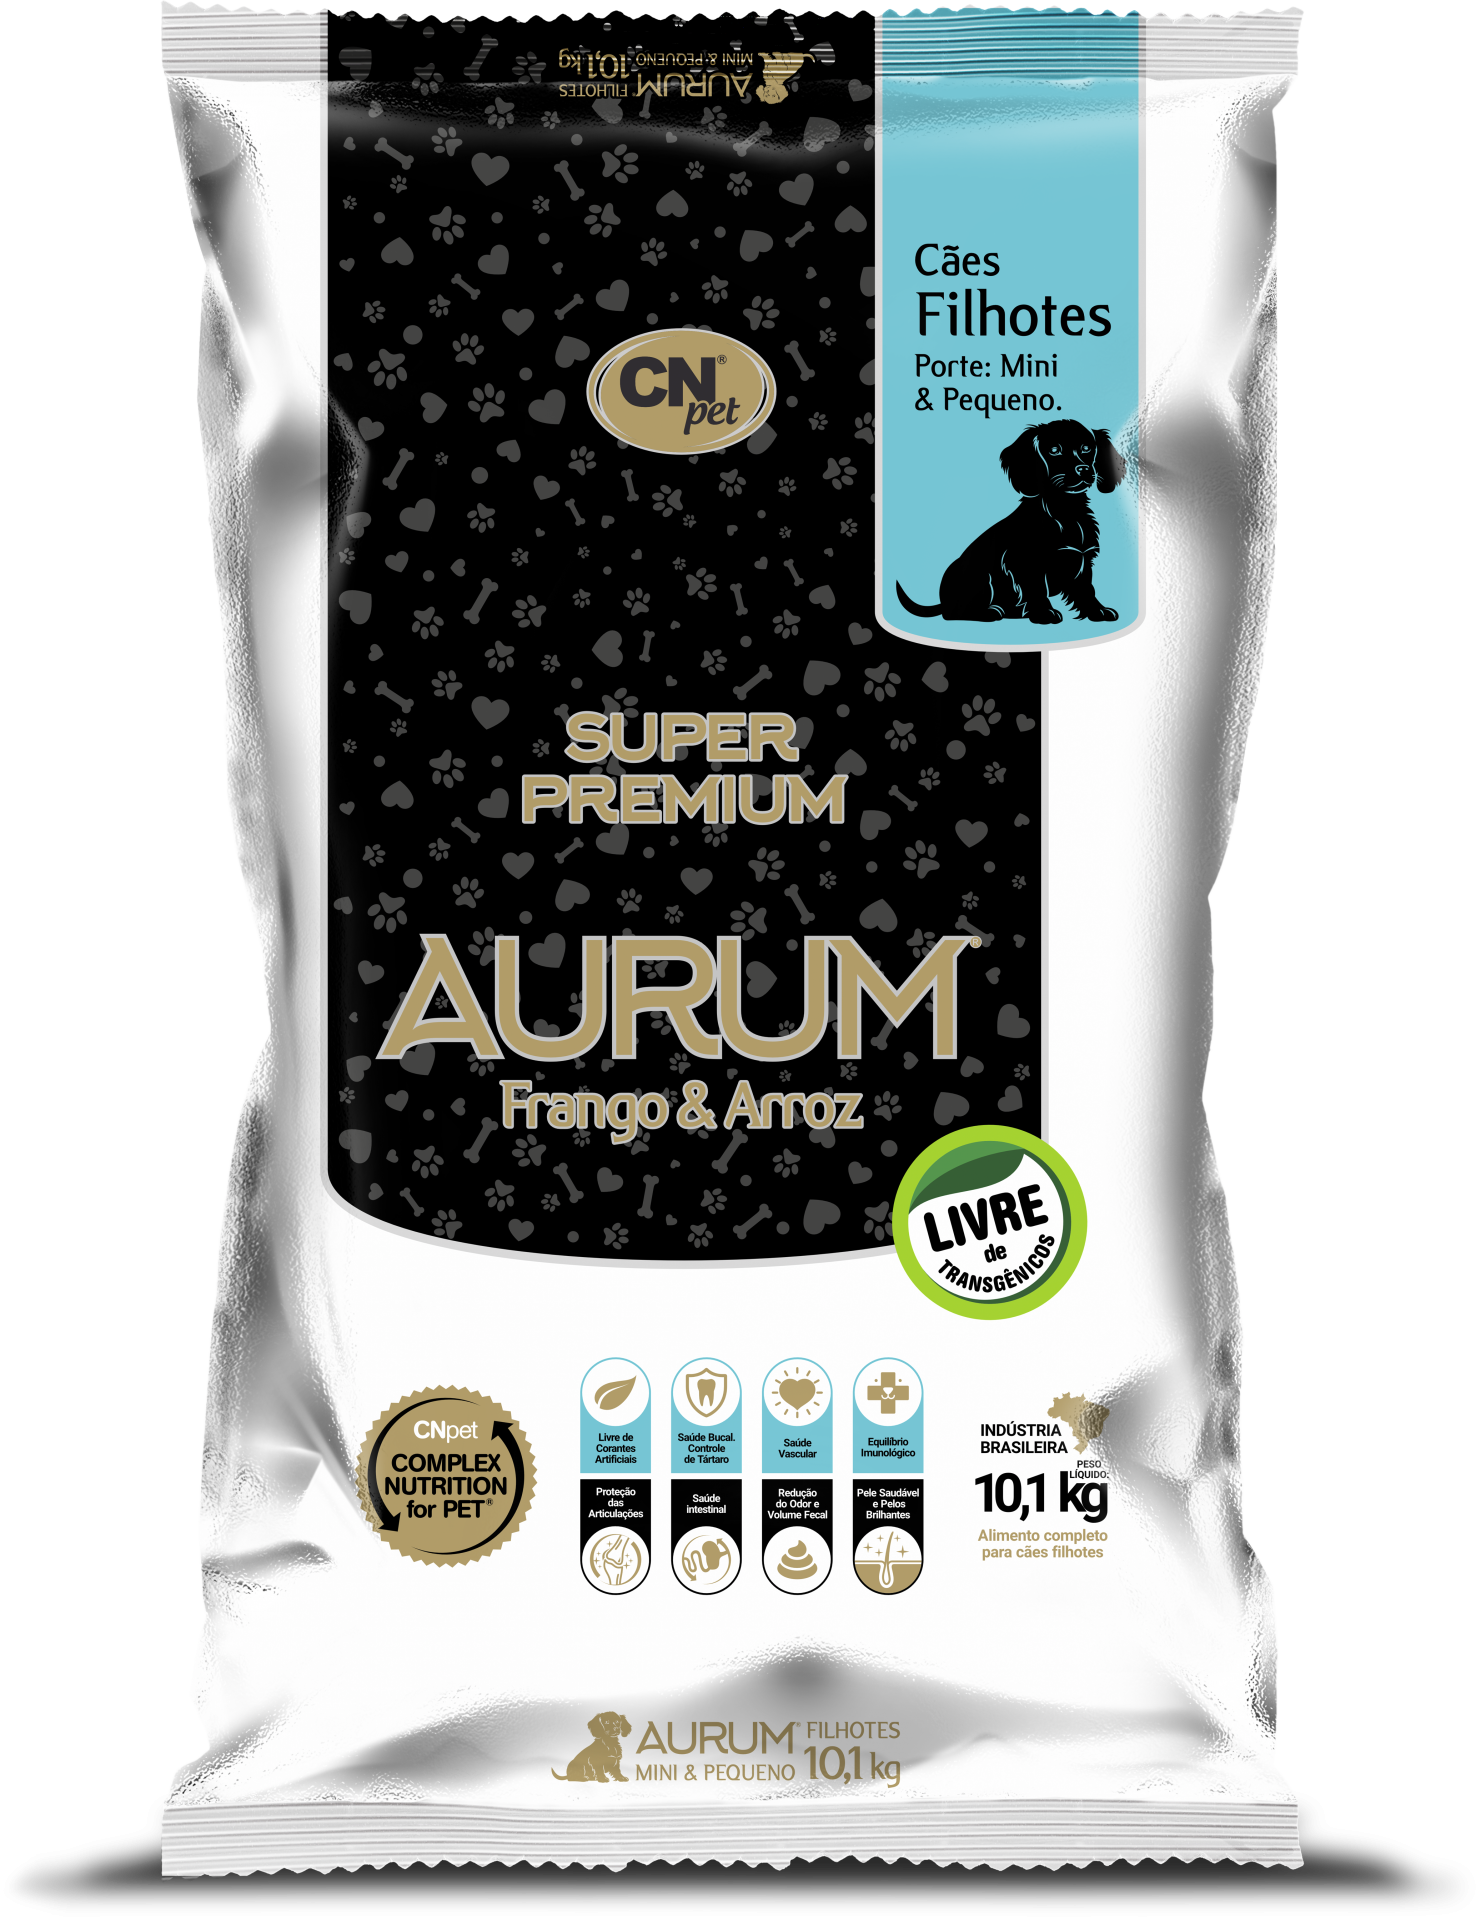 AURUM – Super Premium Filhotes Porte Mini e Pequeno